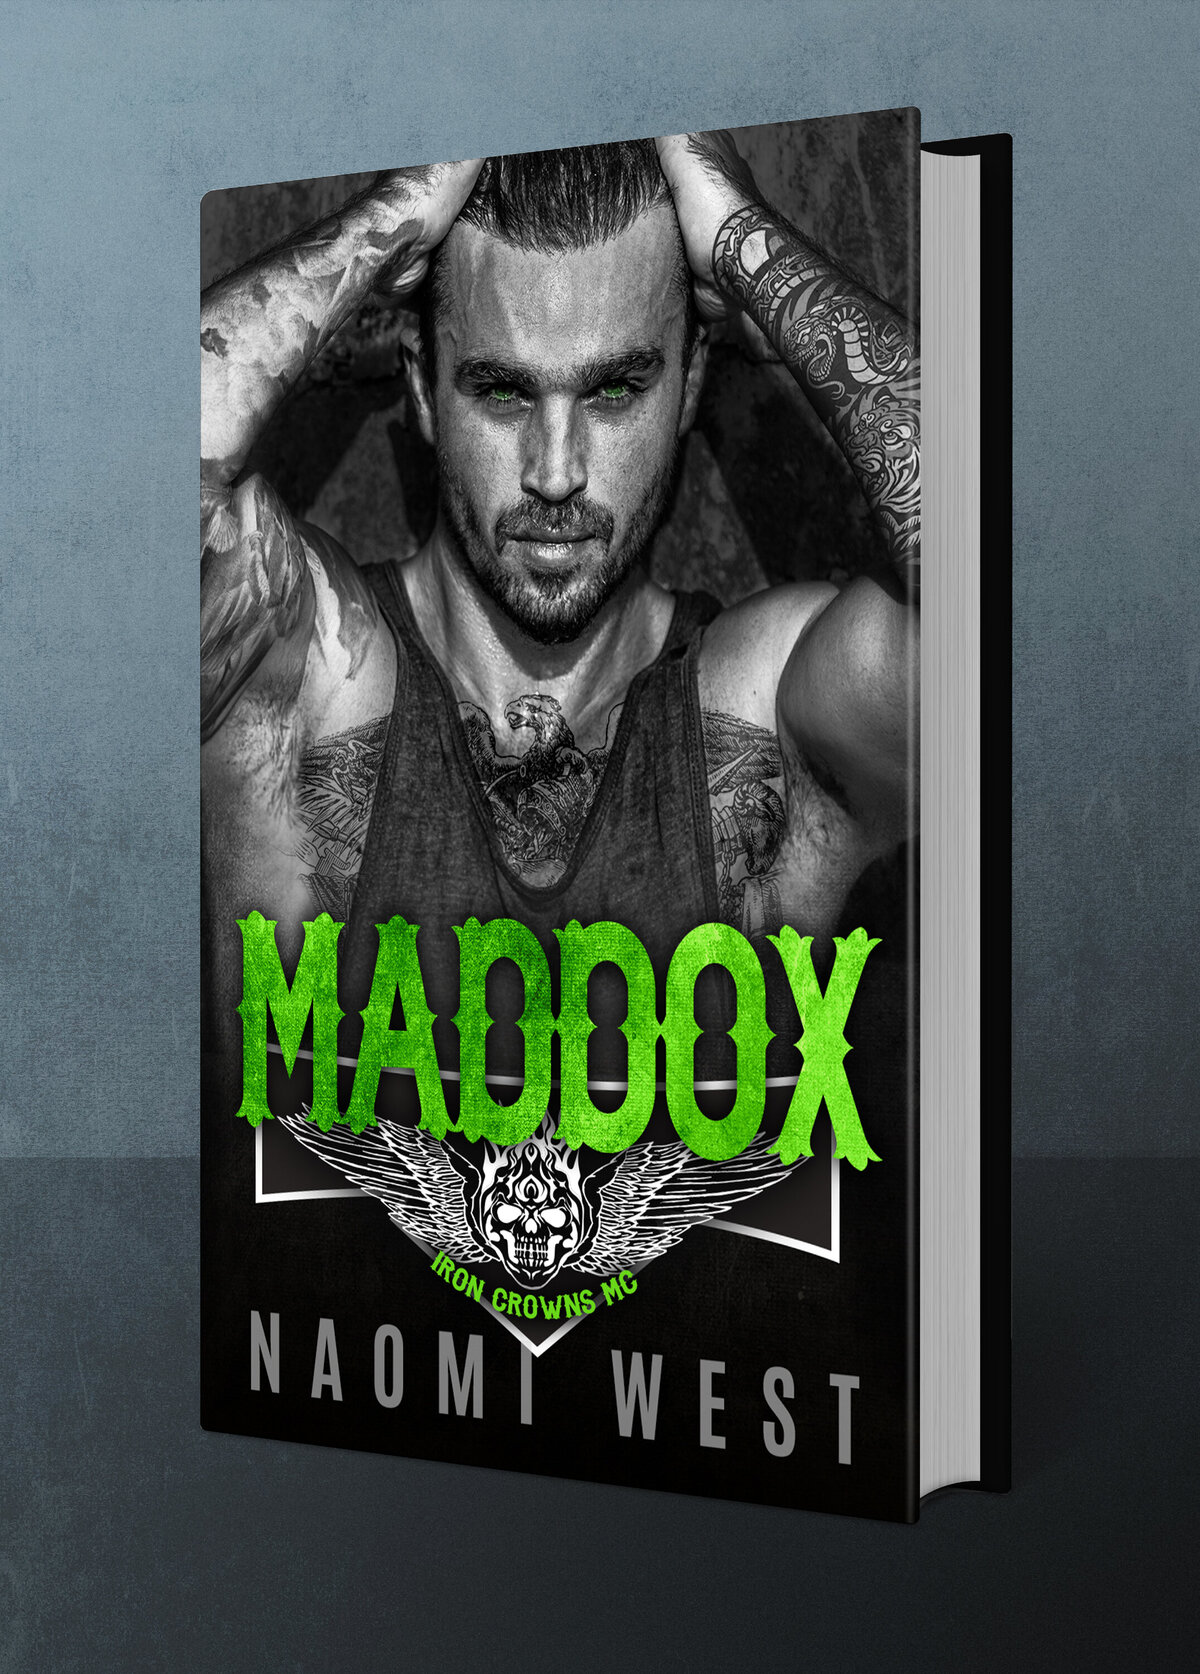 Maddox by Naomi West